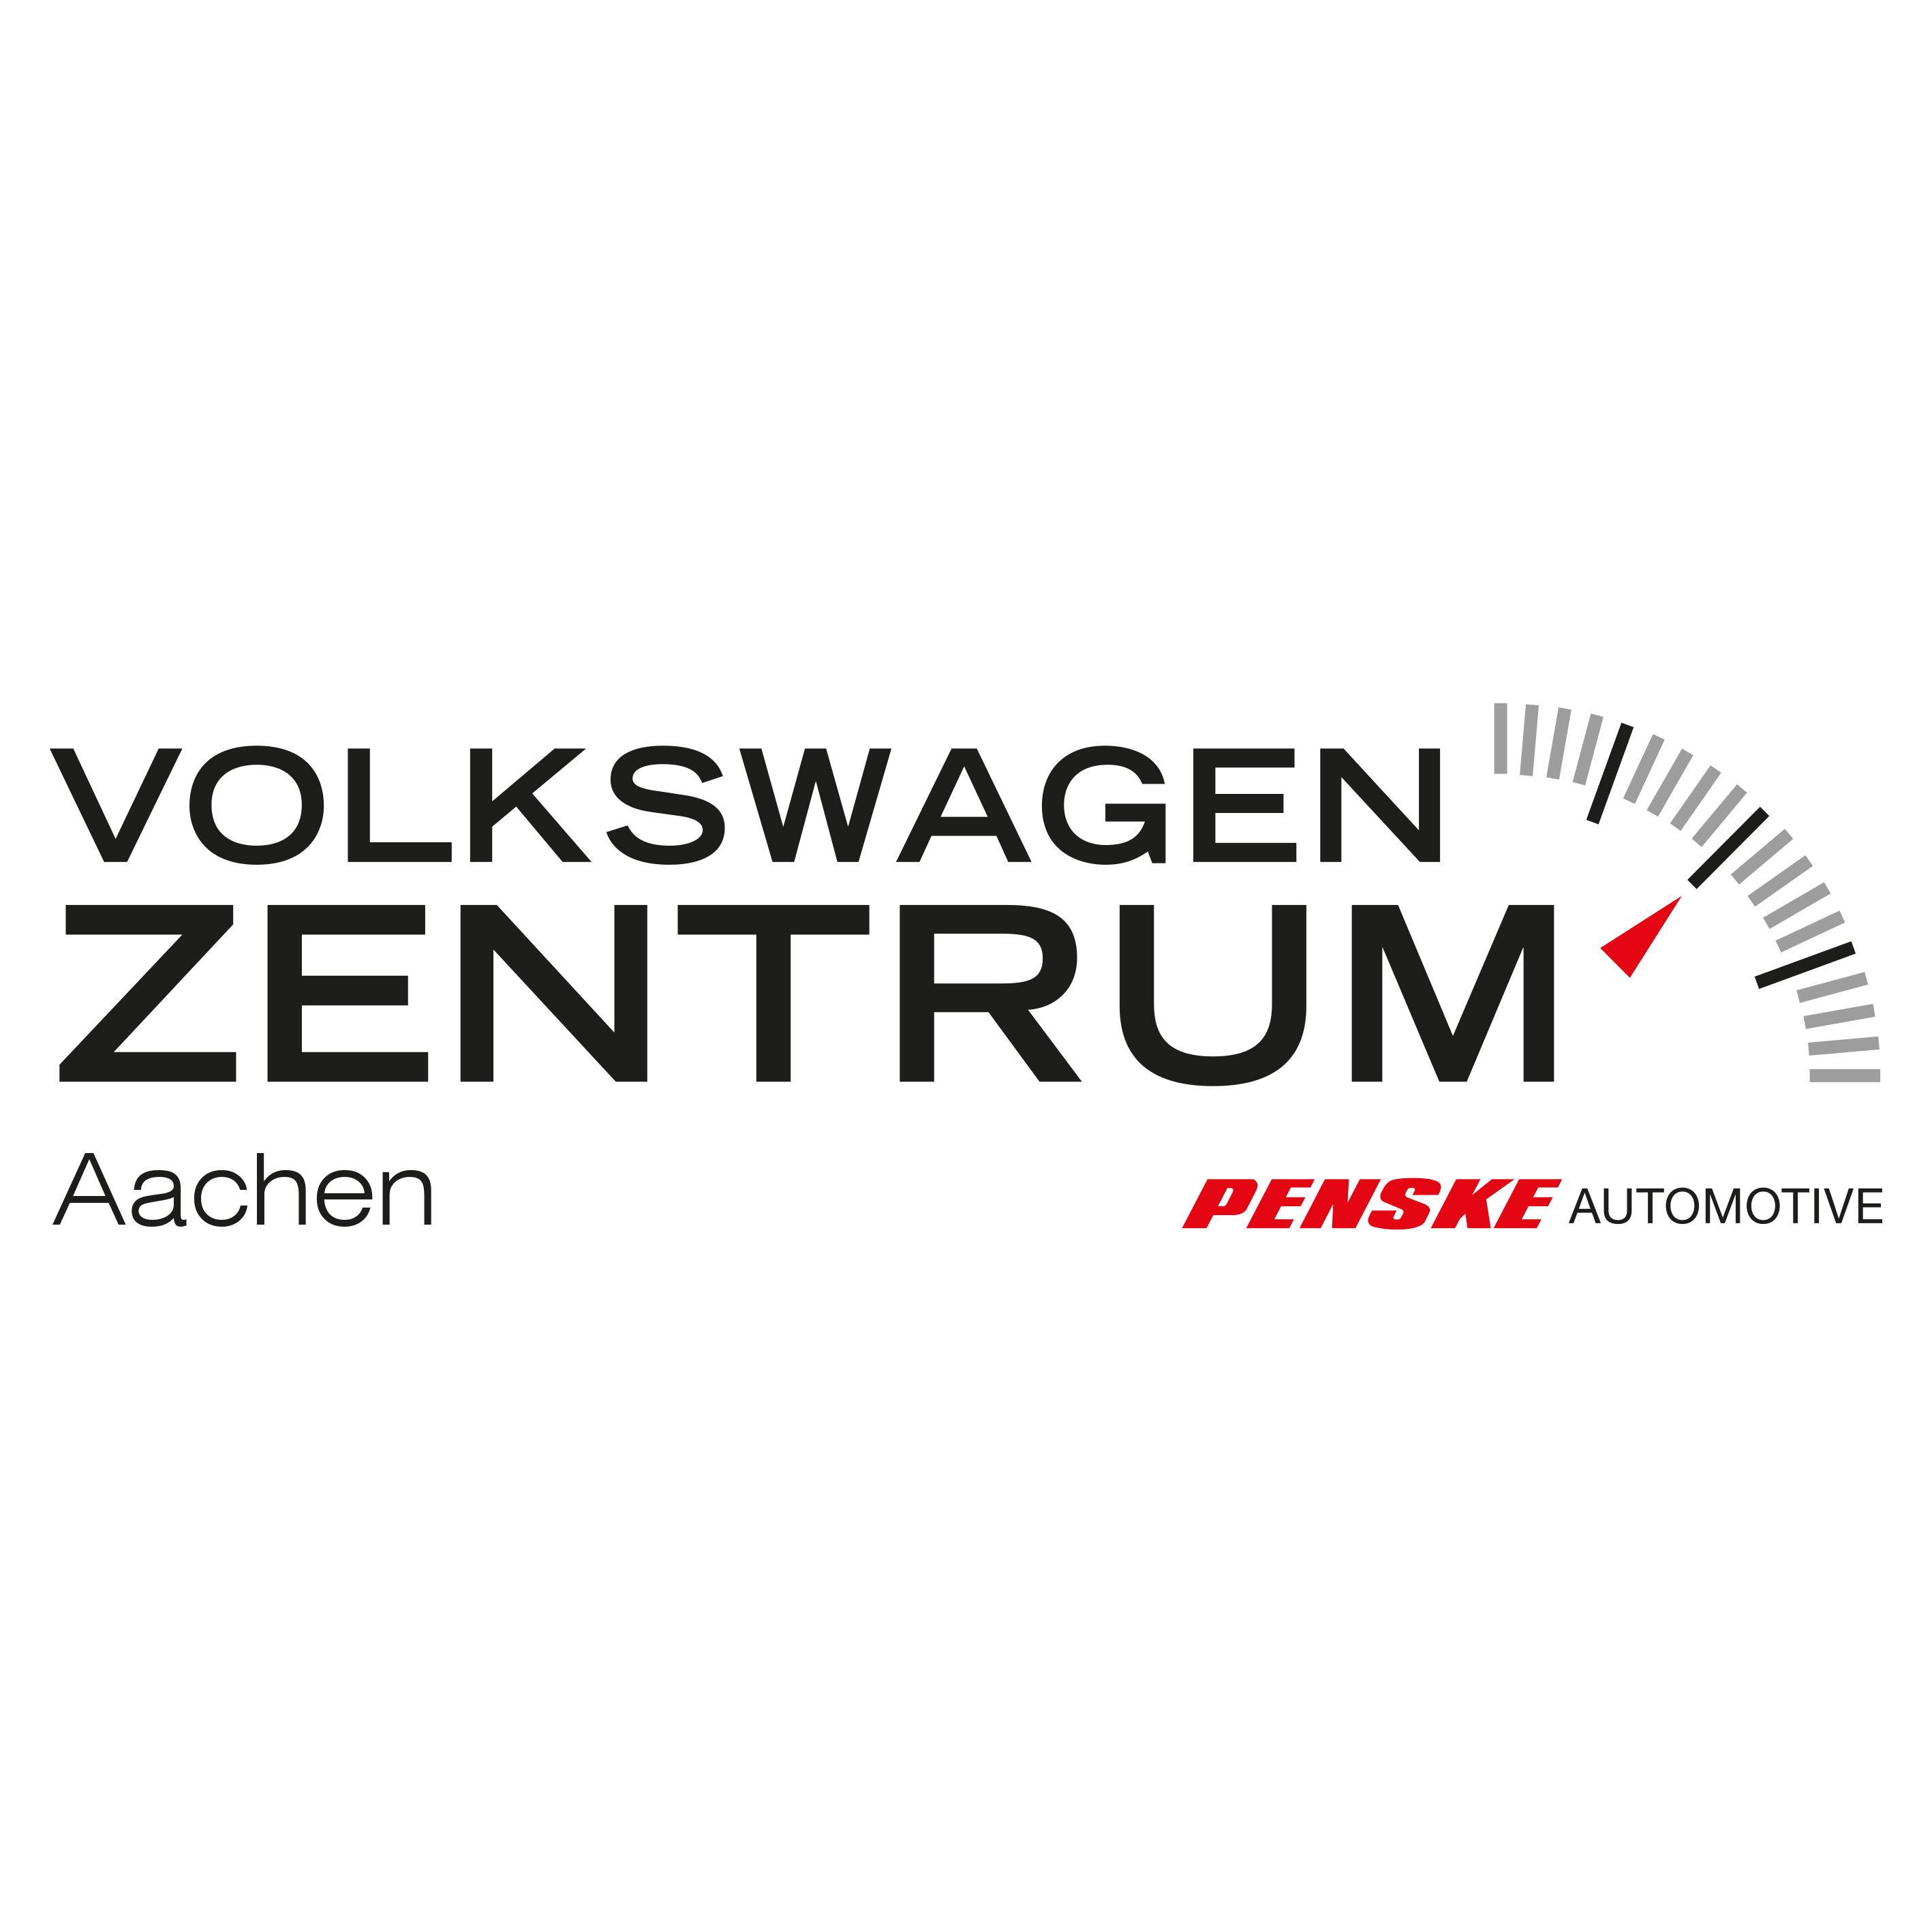 Volkswagen Zentrum Aachen - Volkswagen Zentrum Aachen Jacobs Automobile GmbH in Aachen - Logo